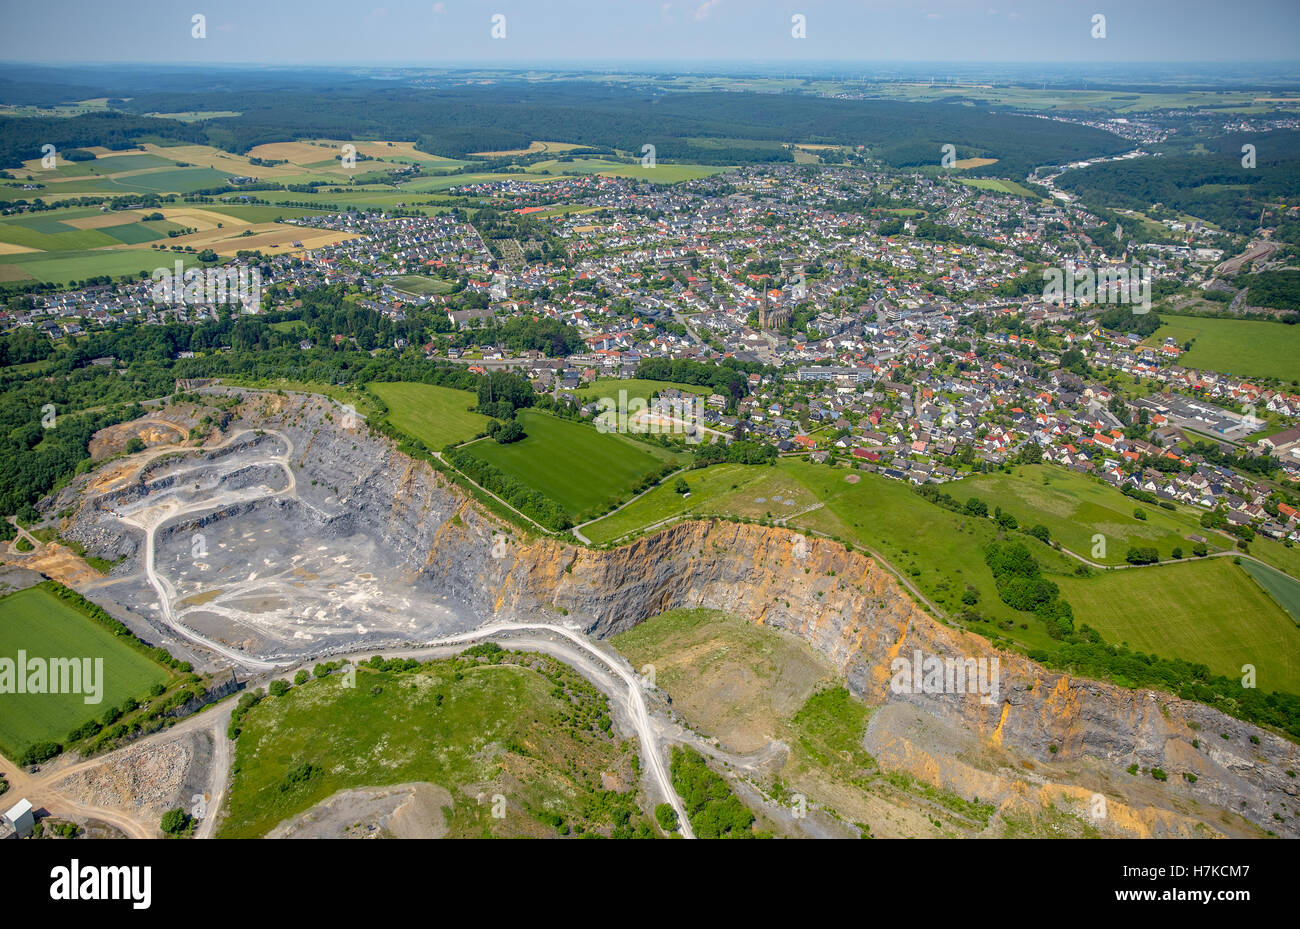 Vista aerea, Warstein cava di estrazione di pietra calcarea, Nuttlaer Pfad, Warstein, Sauerland, Nord Reno-Westfalia, Germania Foto Stock